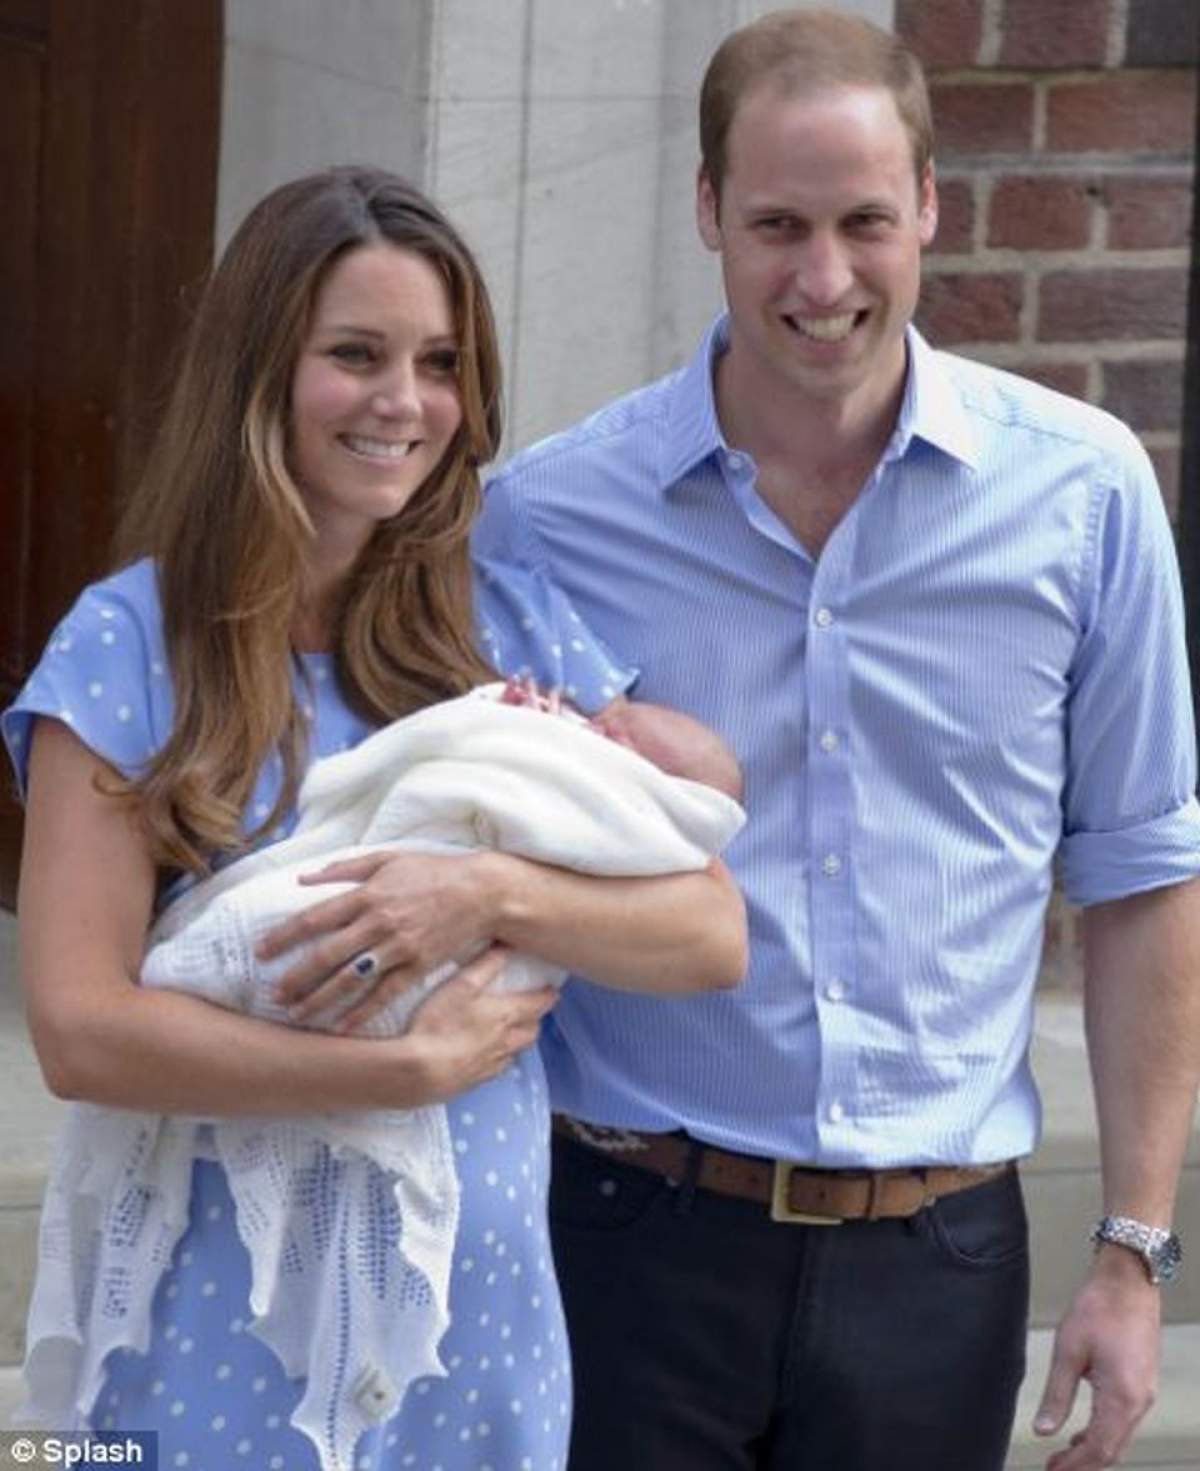 Ocupaţia tatălui: Prinţul din Marea Britanie. Ocupaţia mamei: Prinţesa din Marea Britanie. Acesta poate fi doar certificatul de naştere al bebeluşului regal! Foto